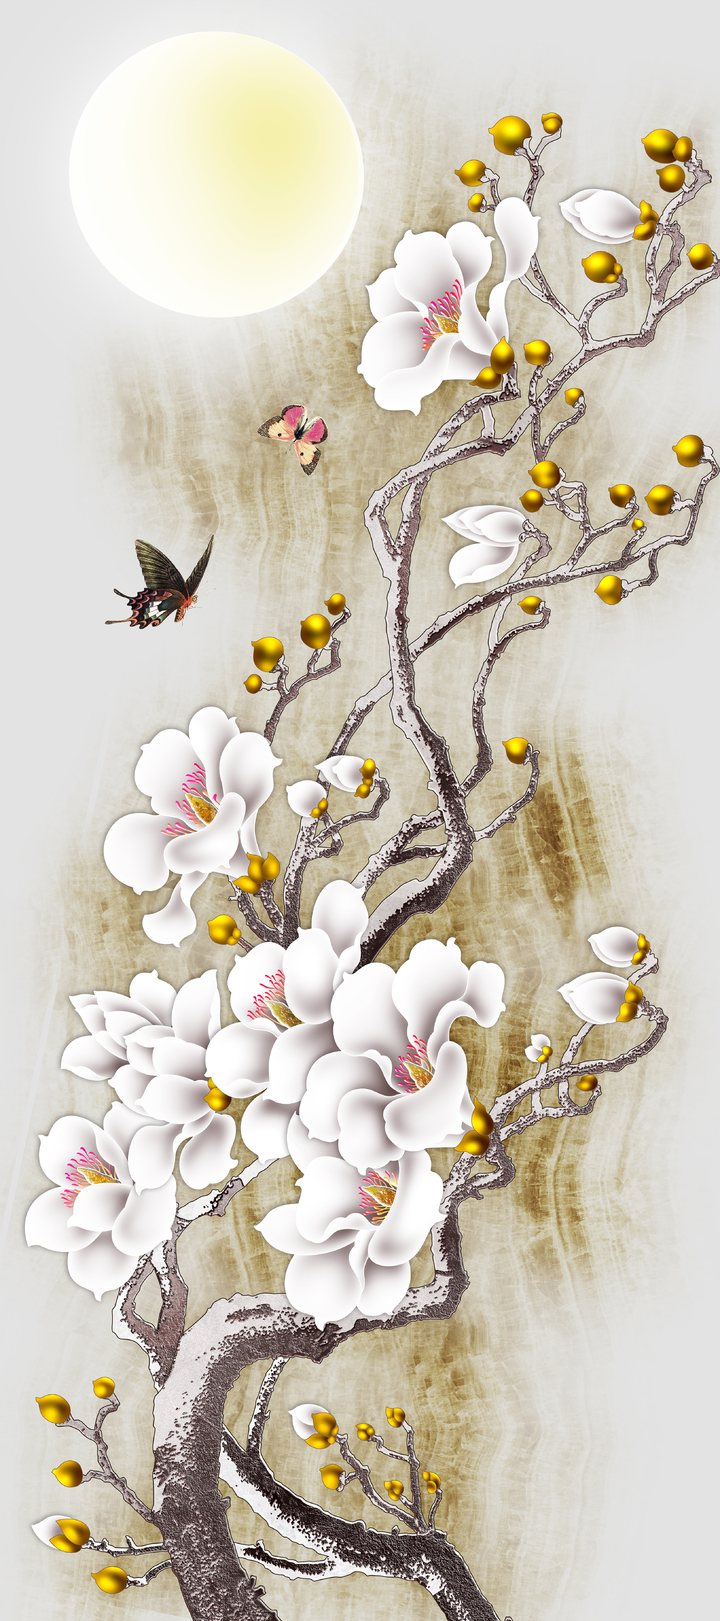 Tranh vẽ hoa ban trắng và con bướm nâu 29055 - Hoa ban trắng Hoa ban trắng với vẻ đẹp tinh khôi và duyên dáng đã được thể hiện qua bức tranh vẽ này. Điểm nhấn của bức tranh là chiếc cánh của con bướm nâu, tô điểm thêm cho nét đẹp truyền thống của hoa ban. Hãy cùng chúng tôi tìm hiểu thêm về loài hoa truyền thống này qua bức tranh đầy màu sắc này!